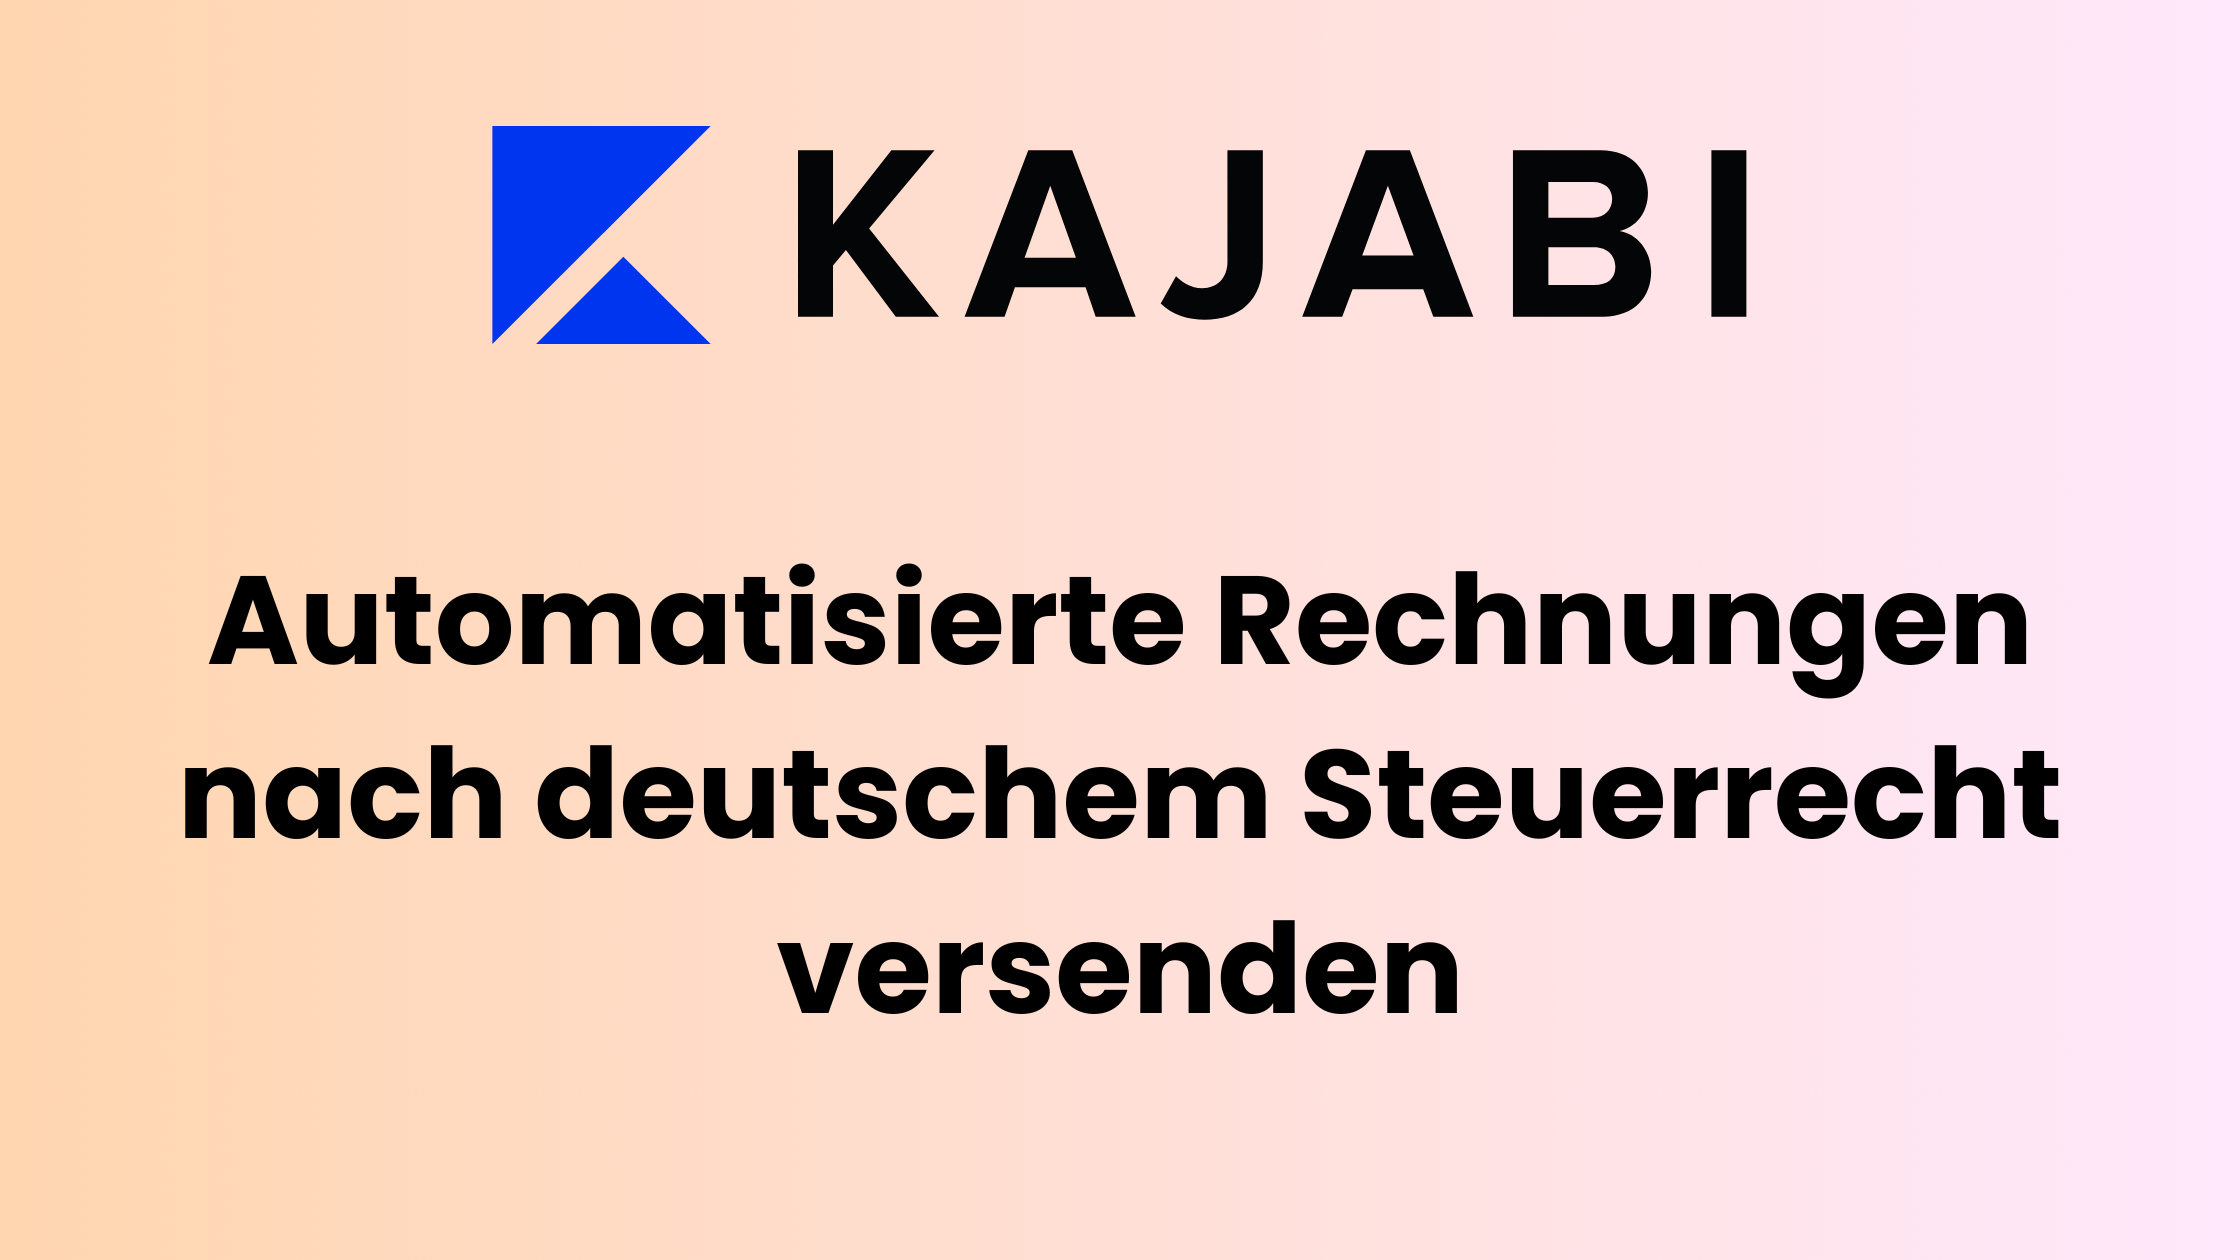 Kajabi: automatisierte Rechnungen nach deutschem Steuerrecht versenden